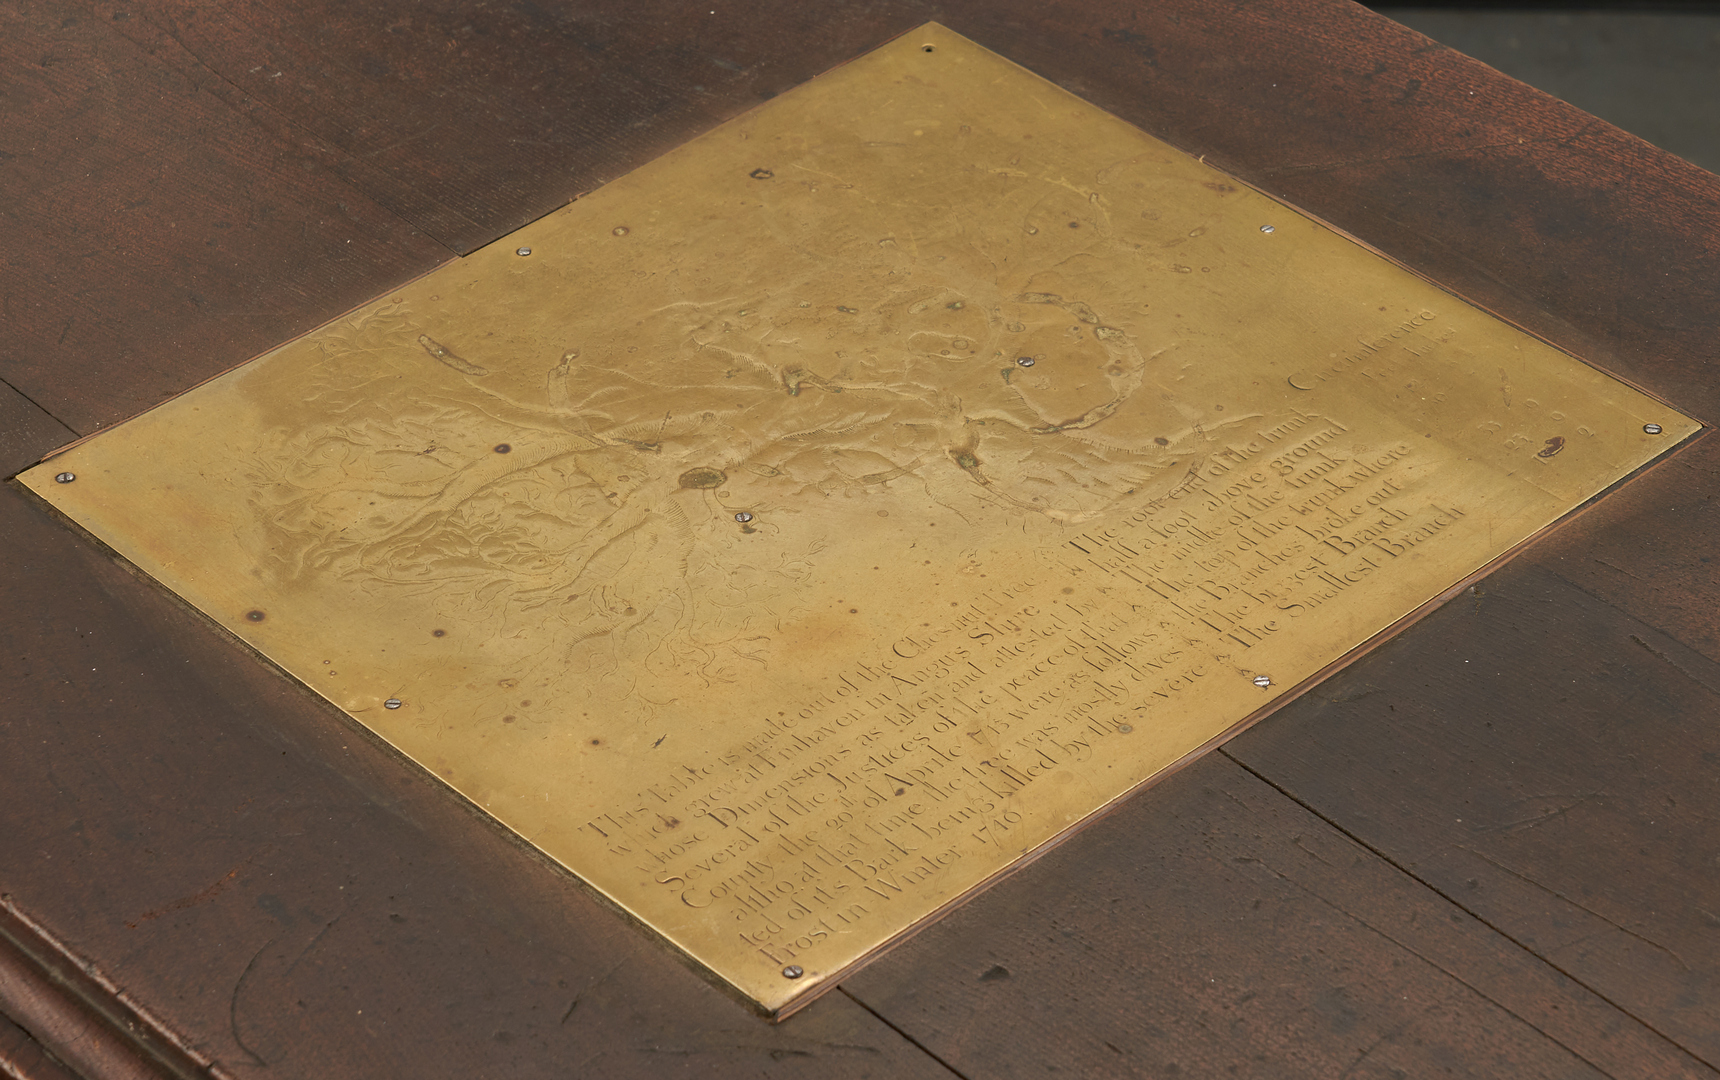 Lot 168: Scottish Chestnut Pembroke Table with provenance plaque